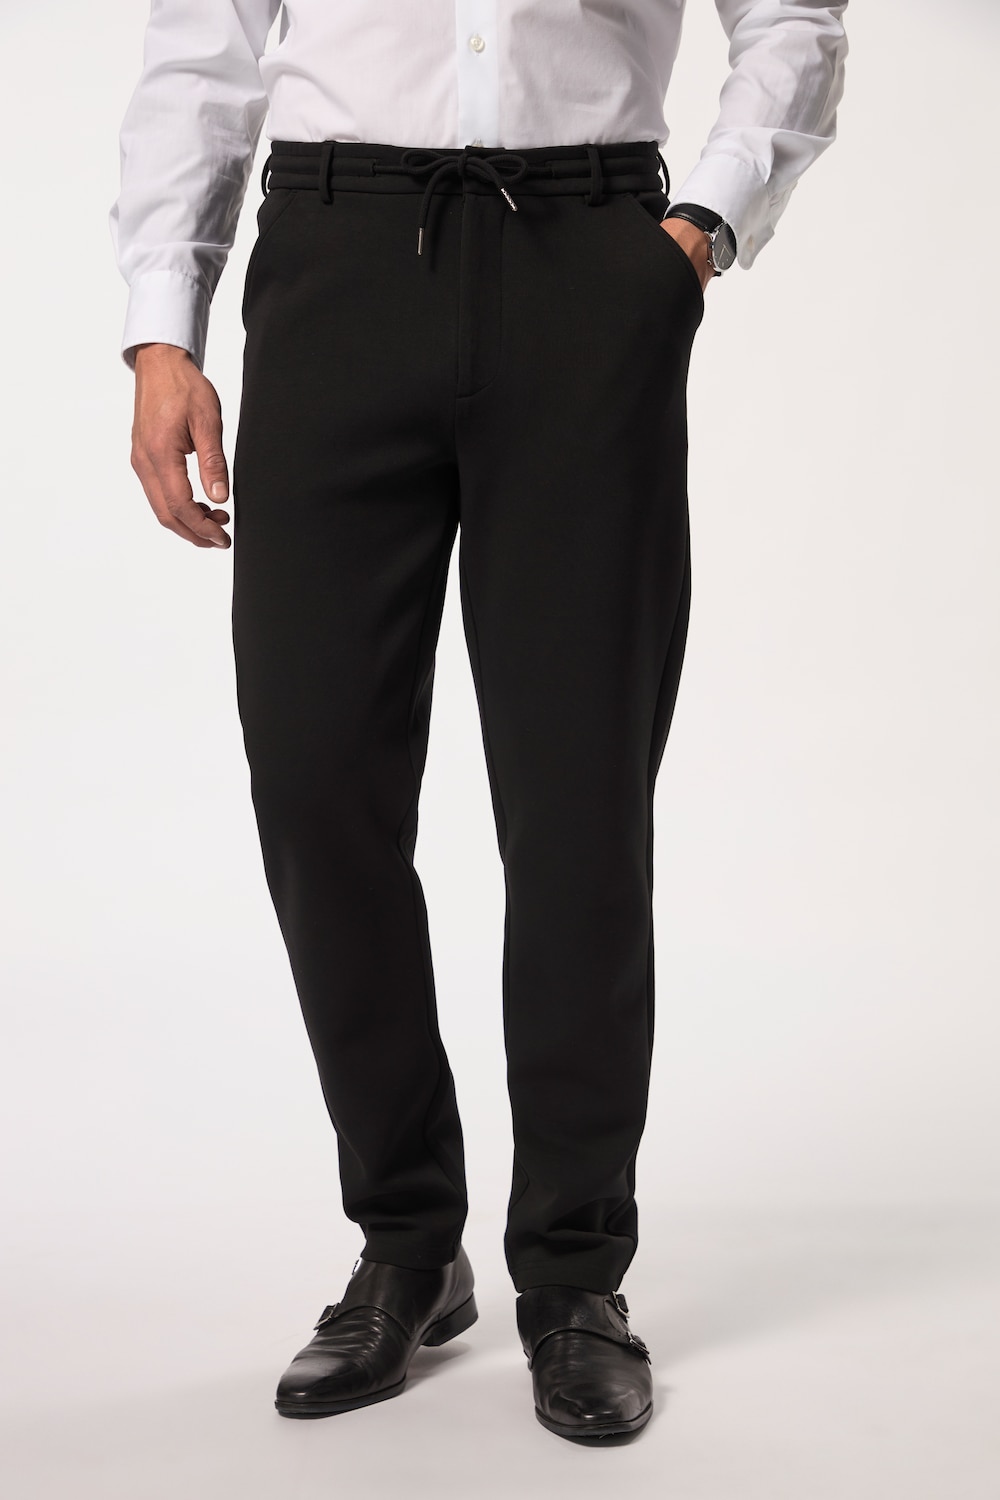 Große Größen Jersey-Hose, Herren, schwarz, Größe: 4XL, Baumwolle/Polyester, JP1880 von JP1880